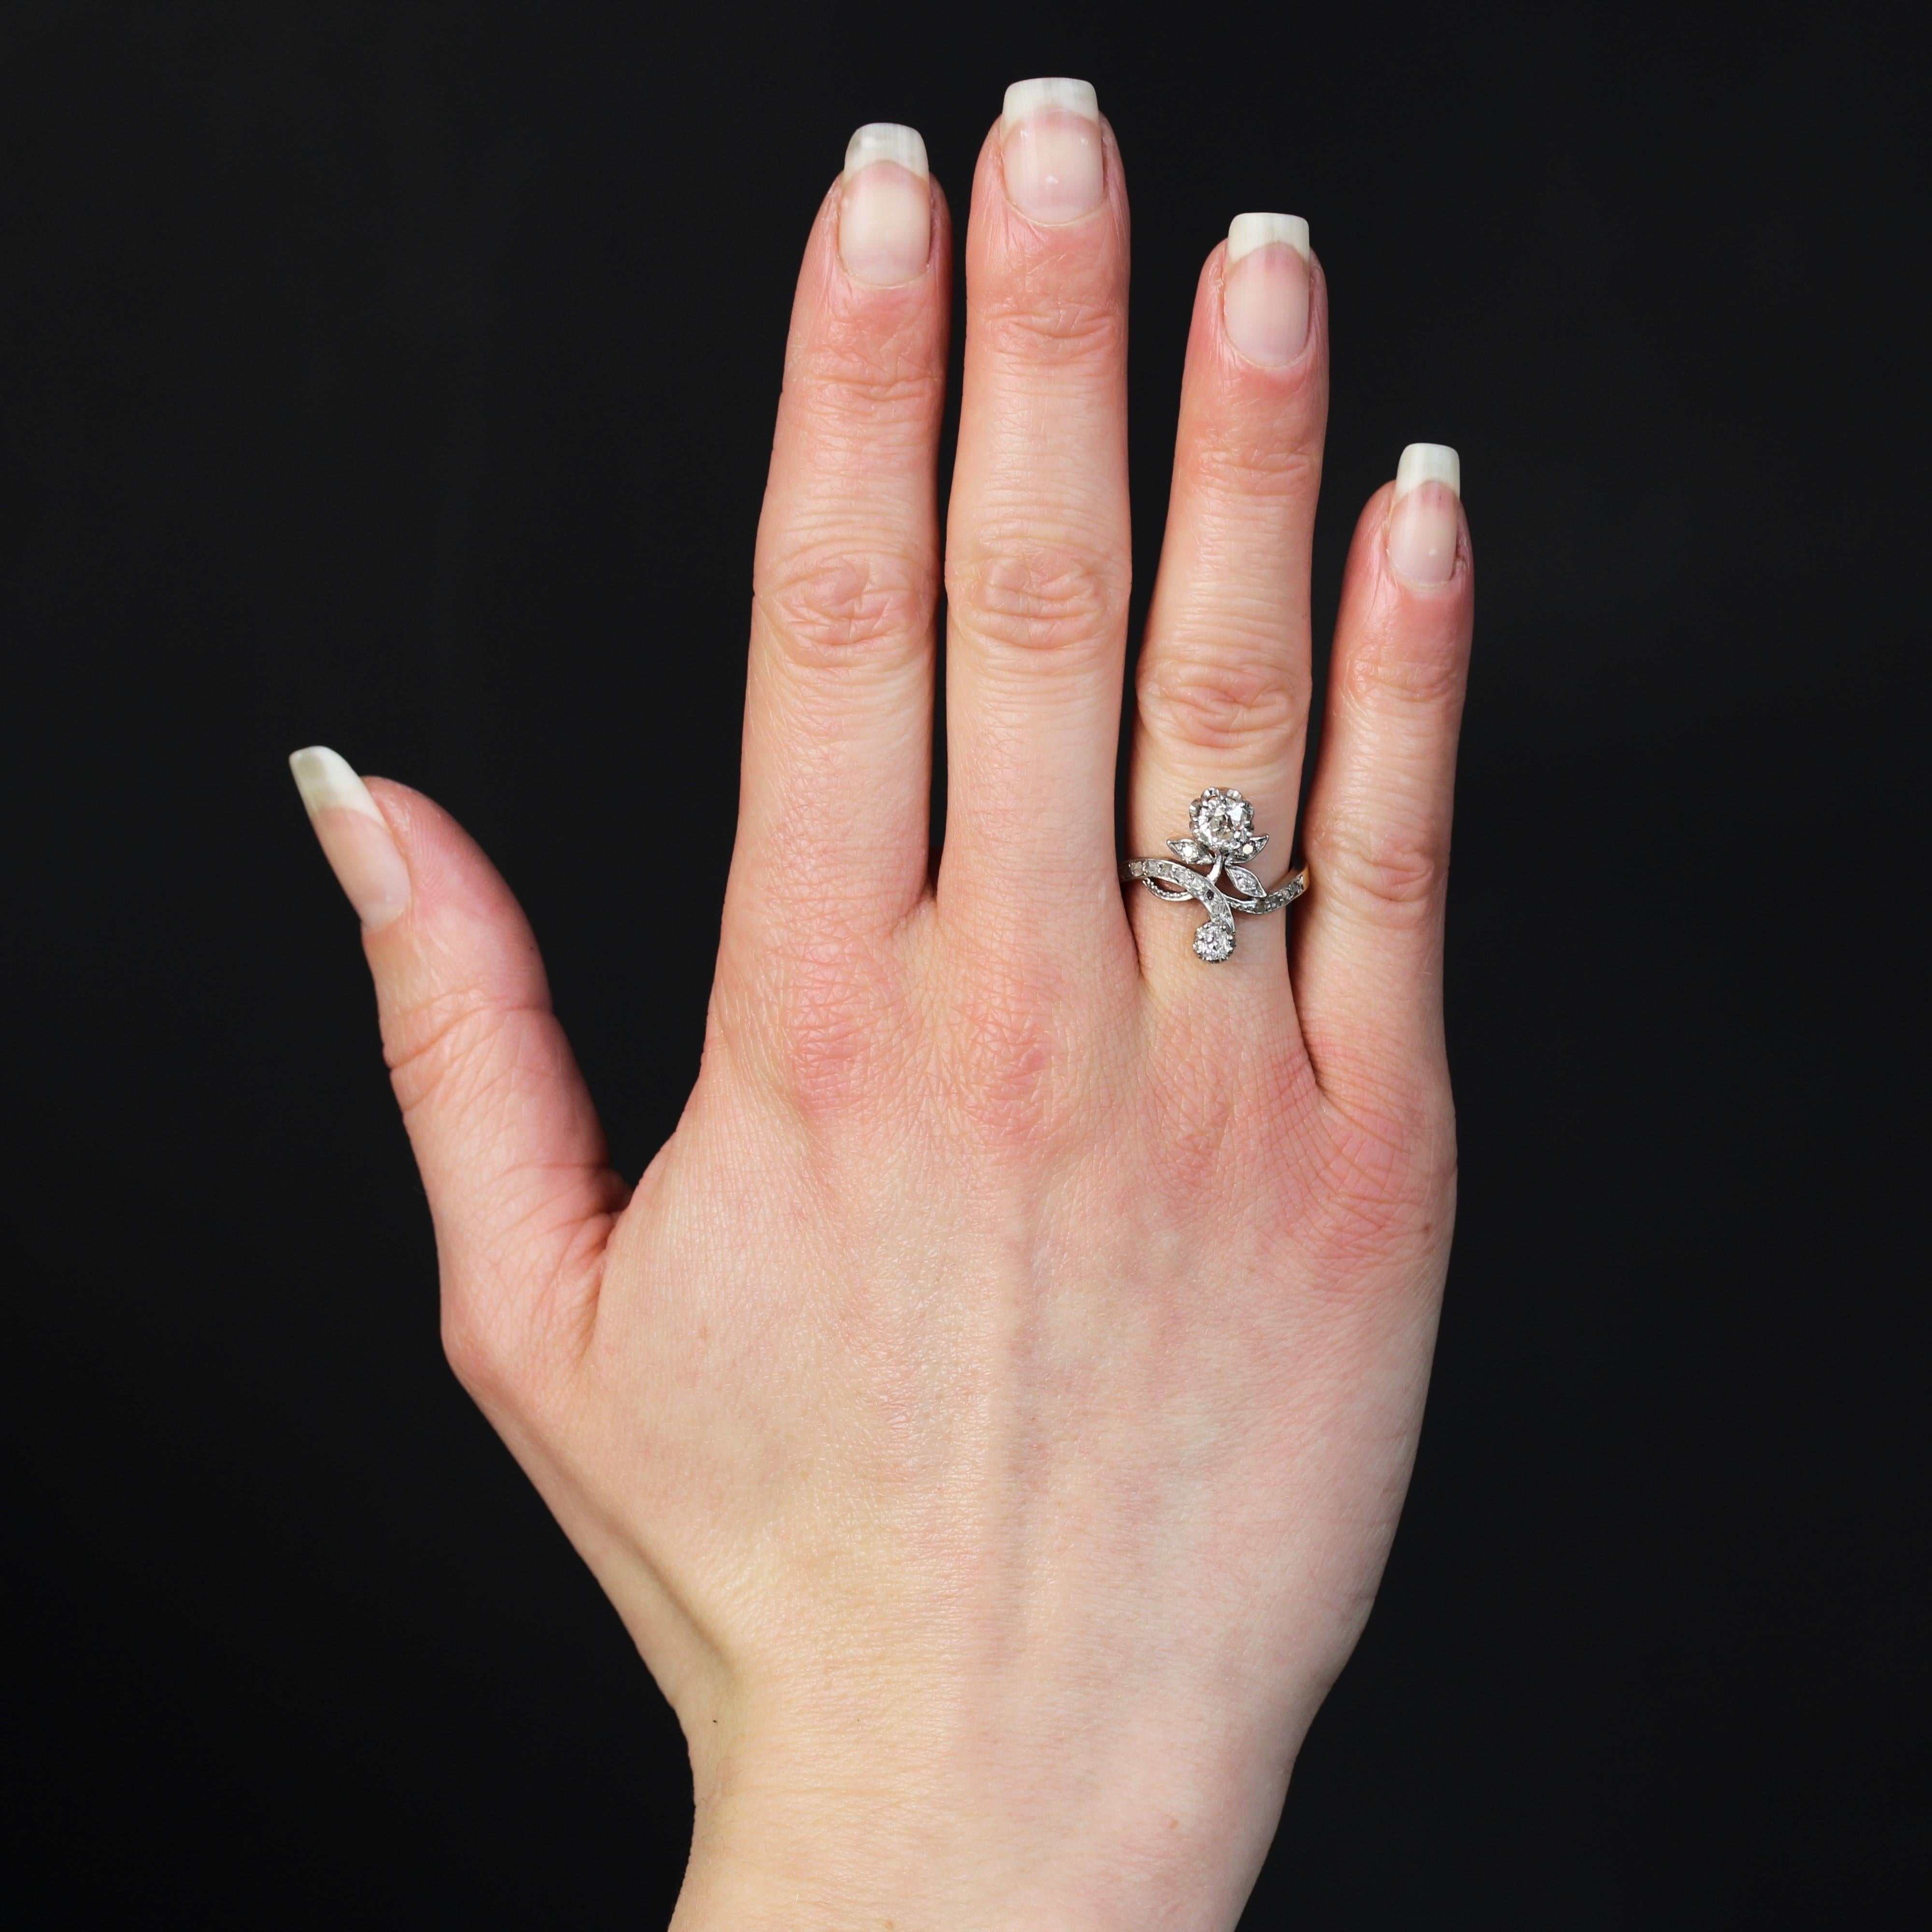 Ring aus 18 Karat Gelbgold, Pferdekopfpunze und Platin.
Ein femininer, authentischer Ring aus der Belle Epoque, der eine Rose stilisiert. Die Blüte wird durch einen Diamanten im Kissenschliff im antiken Stil dargestellt, die Blütenblätter sind mit